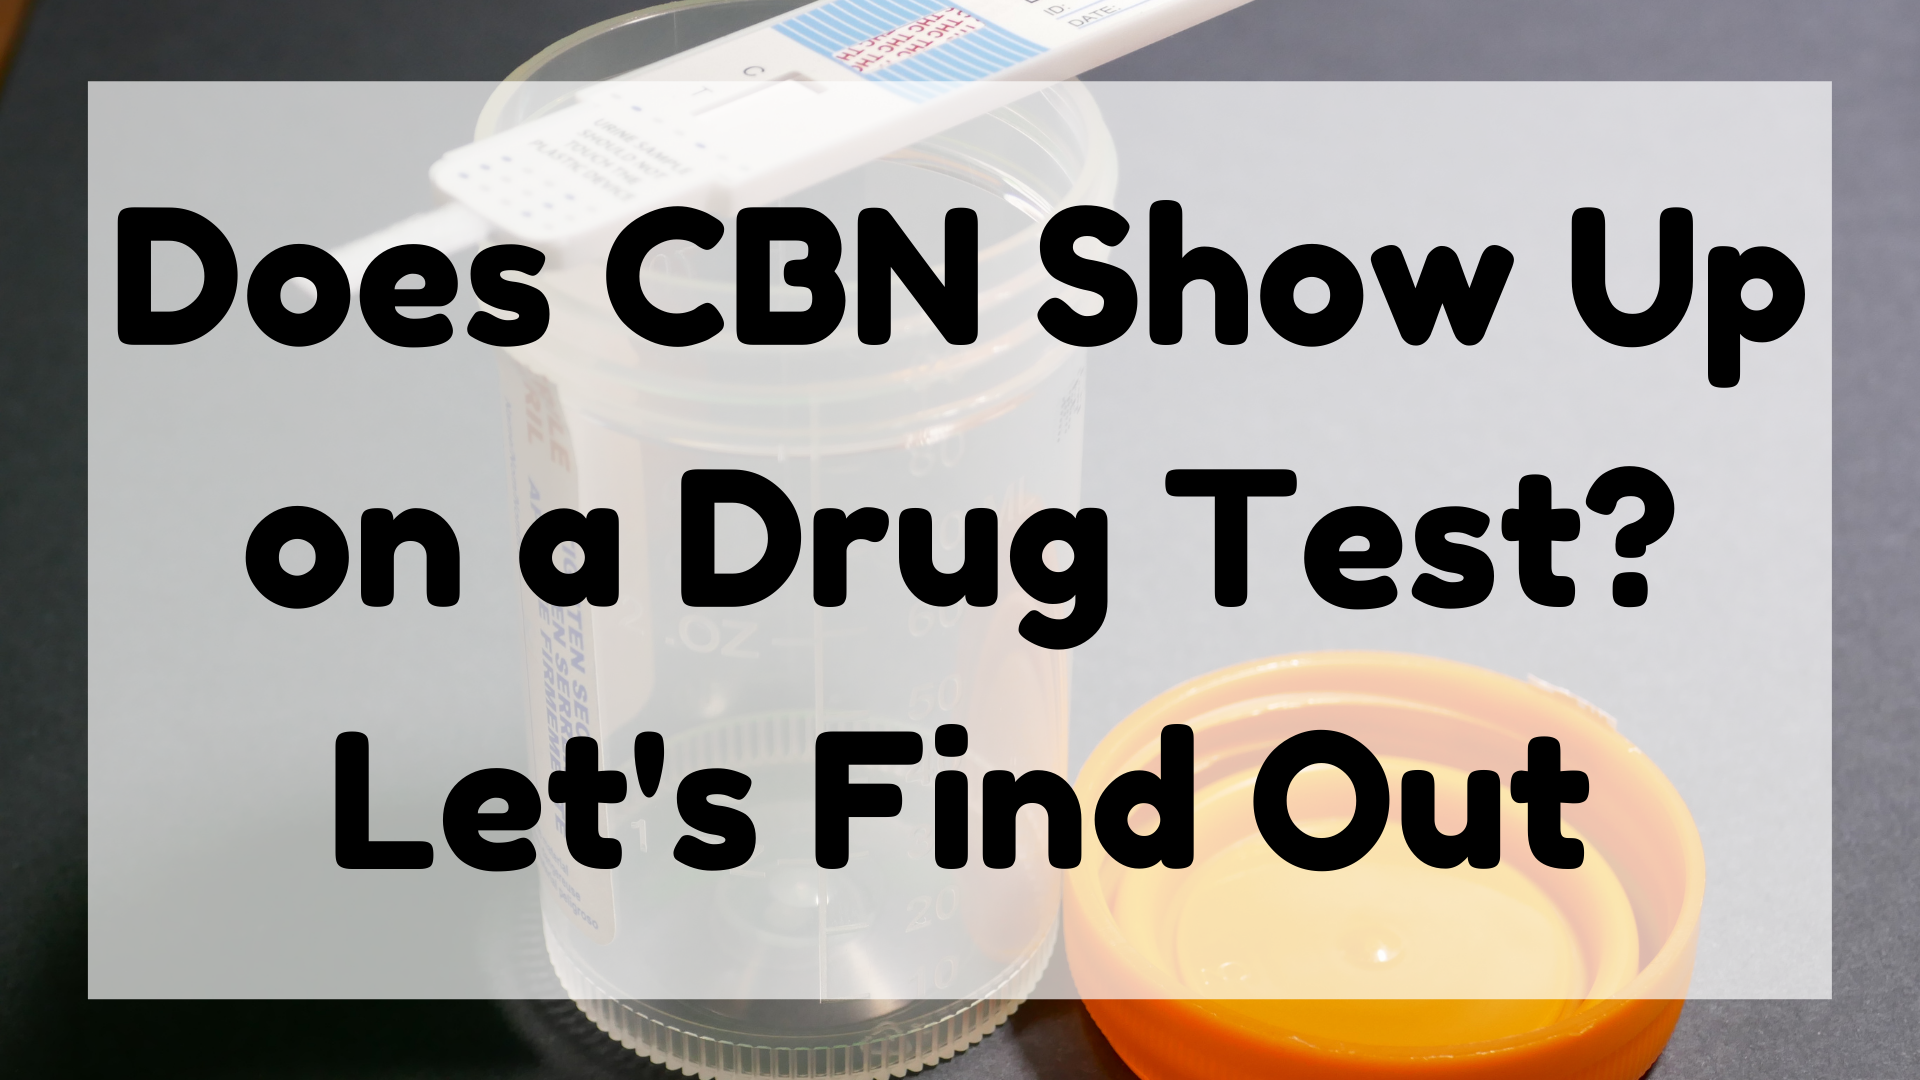 CBN Show Up On a Drug Test